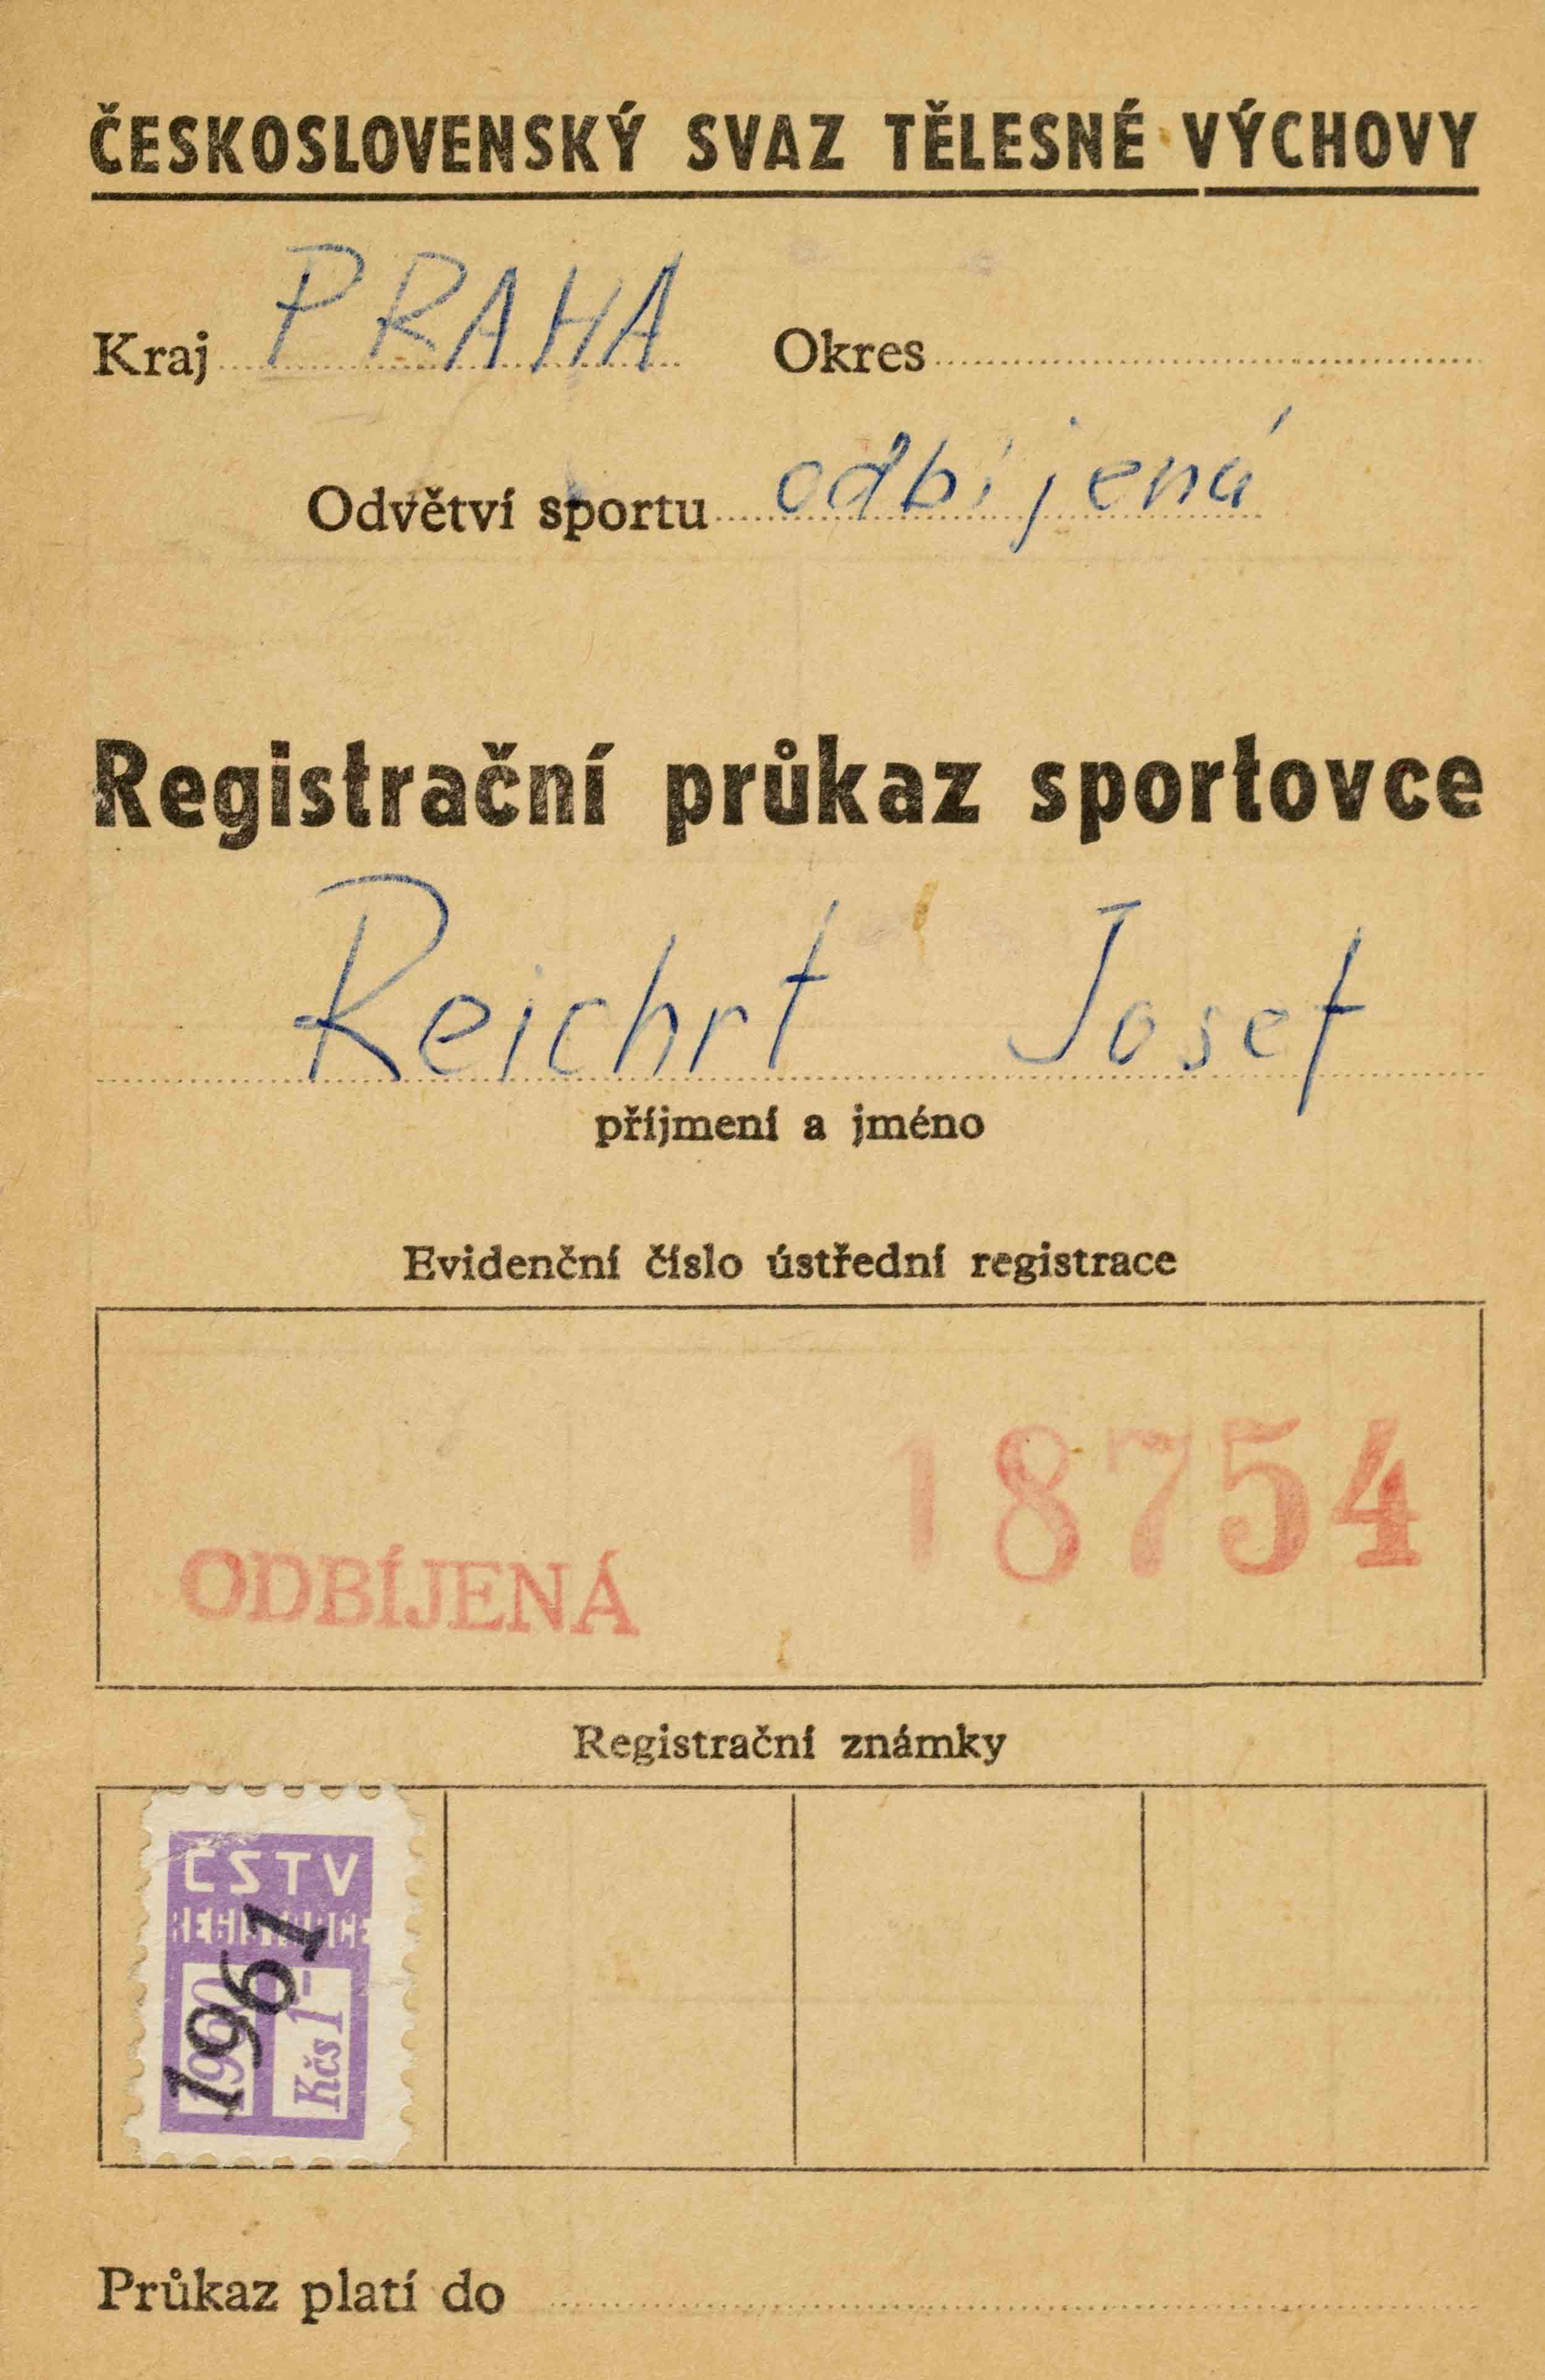 Registrační Průkaz sportovce, Odbíjená 1961